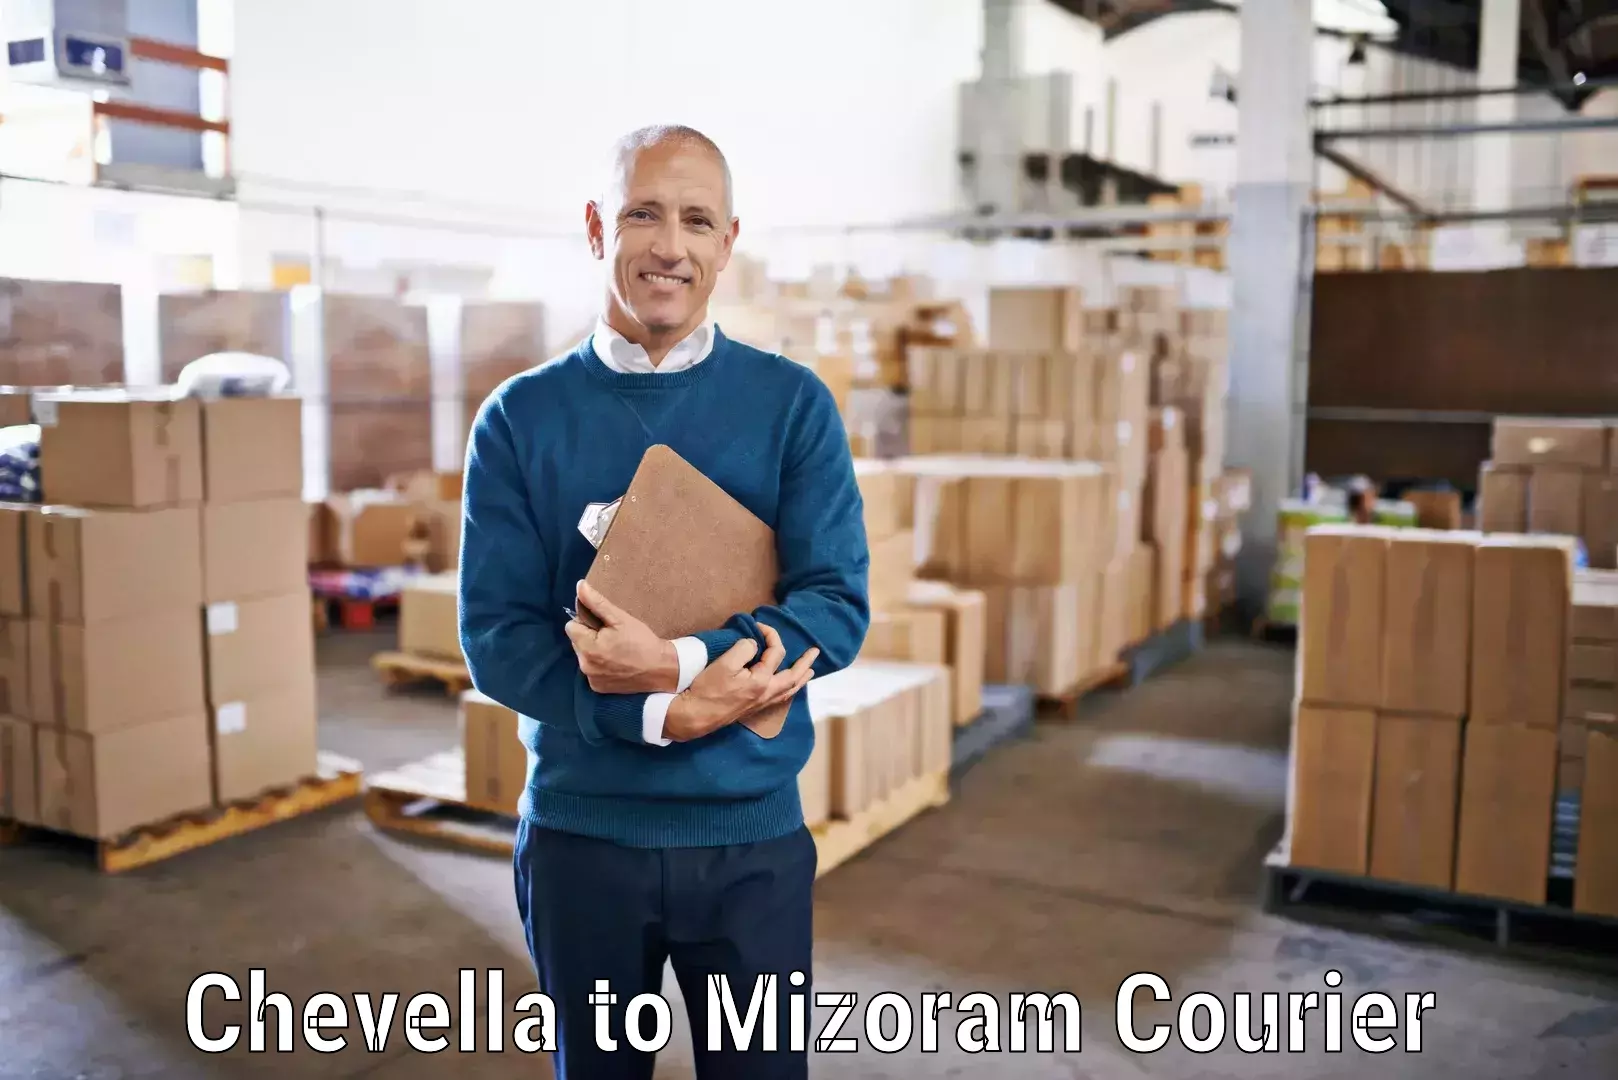 User-friendly delivery service Chevella to Mizoram